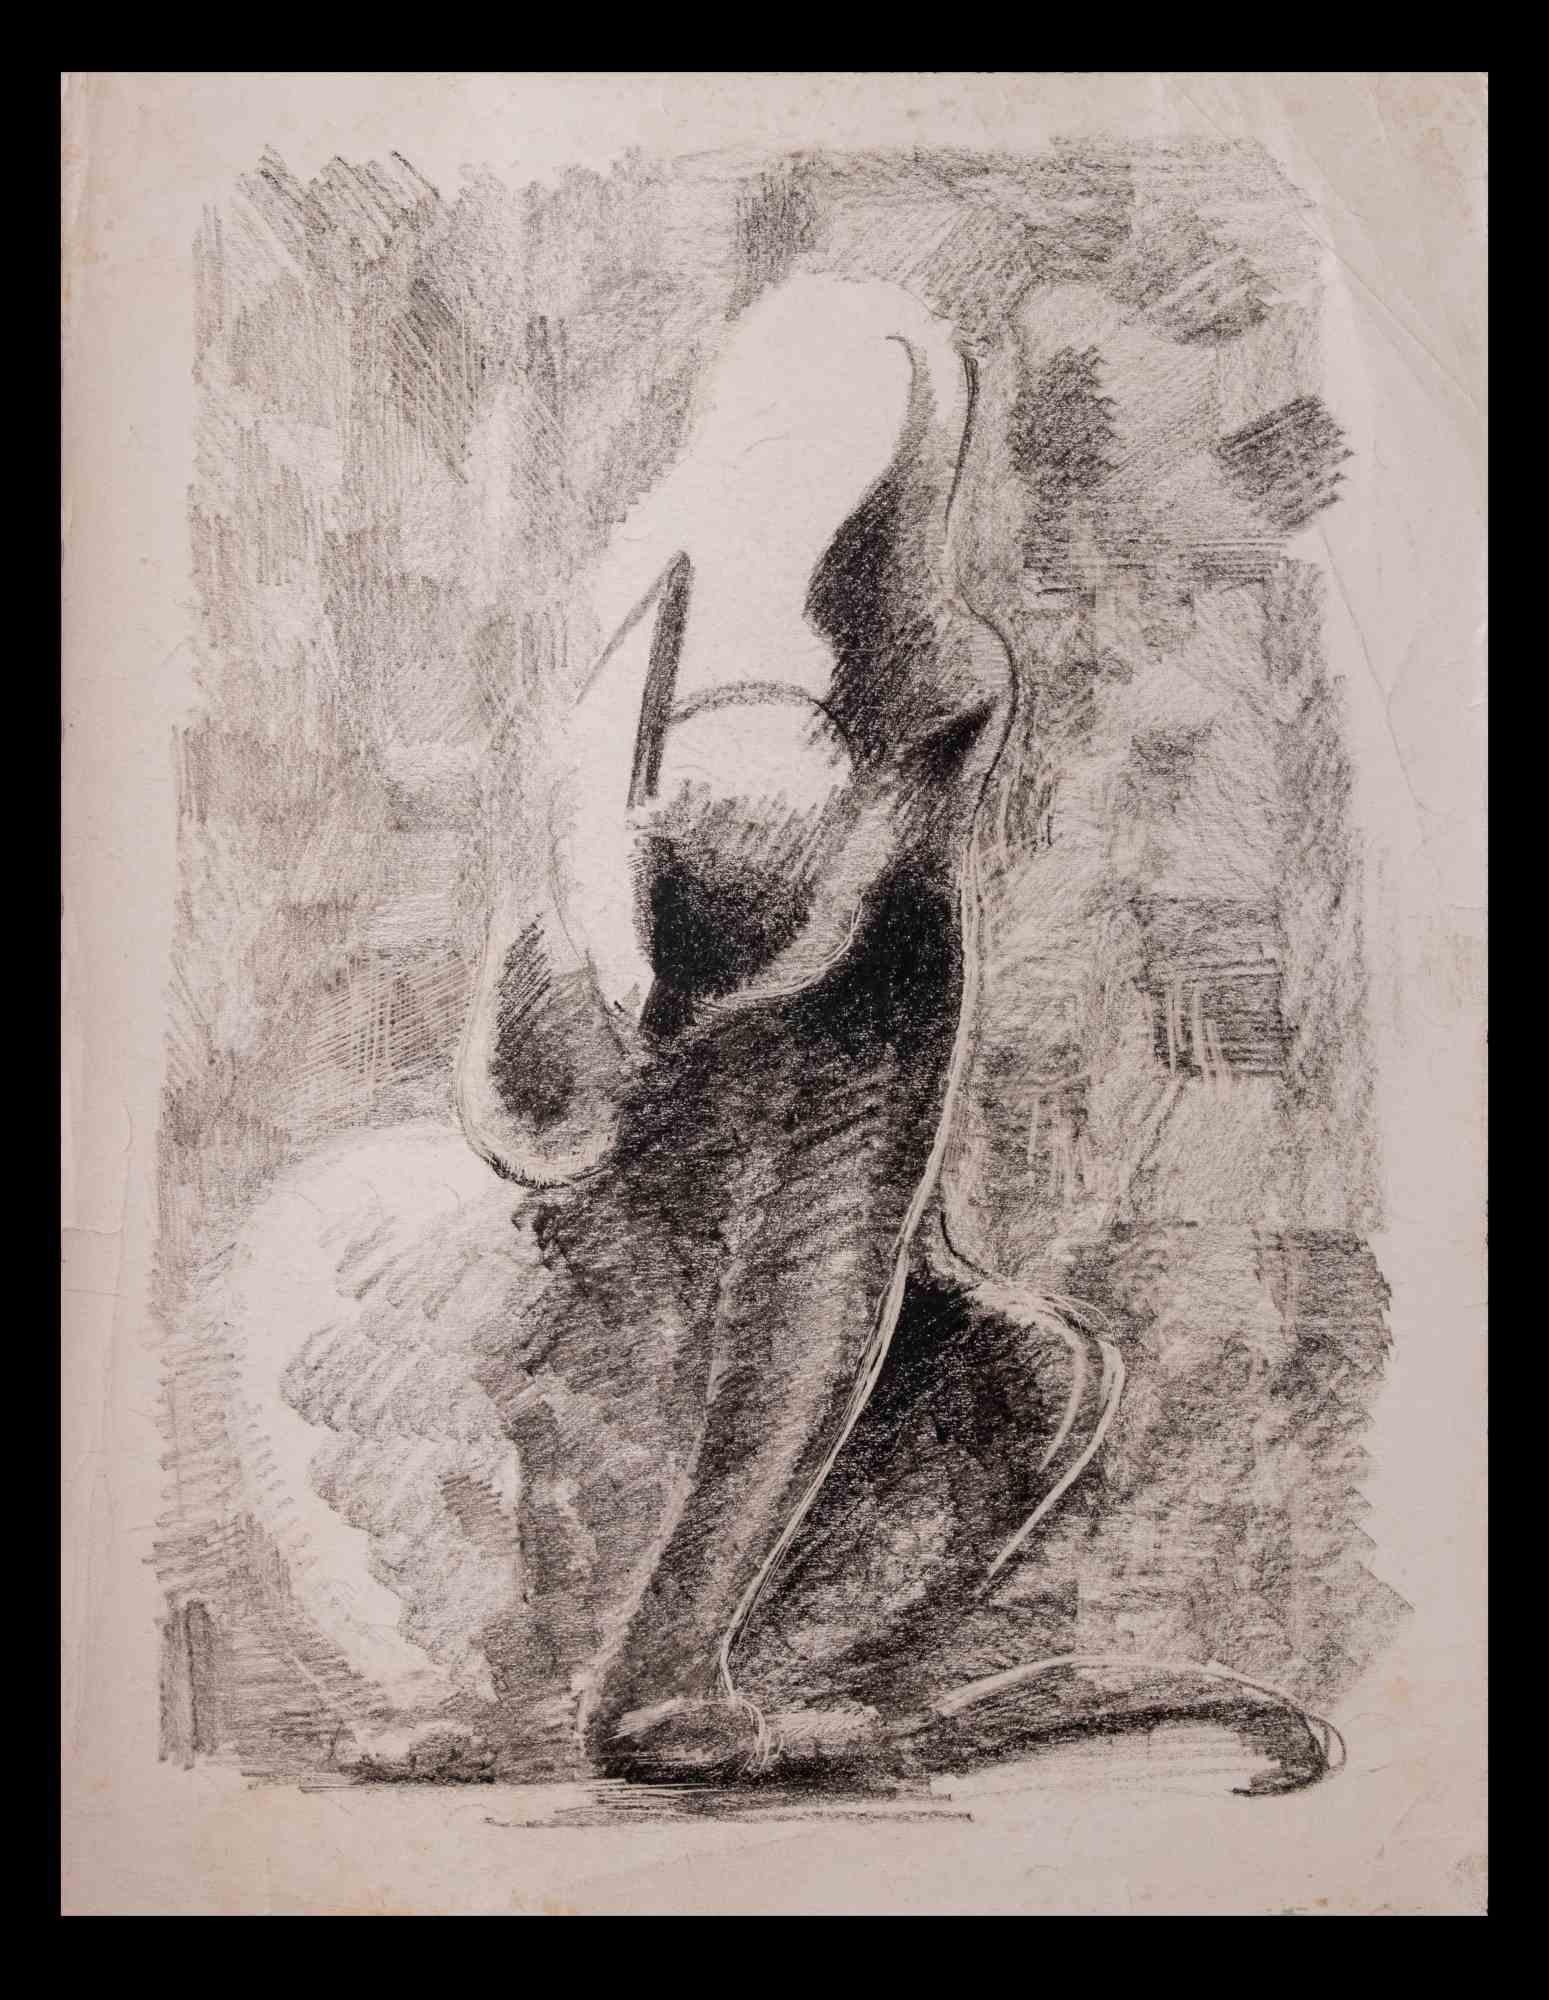 Katze ist eine Kohlezeichnung von Giselle Halff (1899-1971).

Gute Bedingungen.

Giselle Halff (1899-1971), geboren in Hanoi, Schülerin von R.X. Prinet, R. Ménard, L. Simon, B. Boutet de Monvel. Tiermaler und Zeichner.